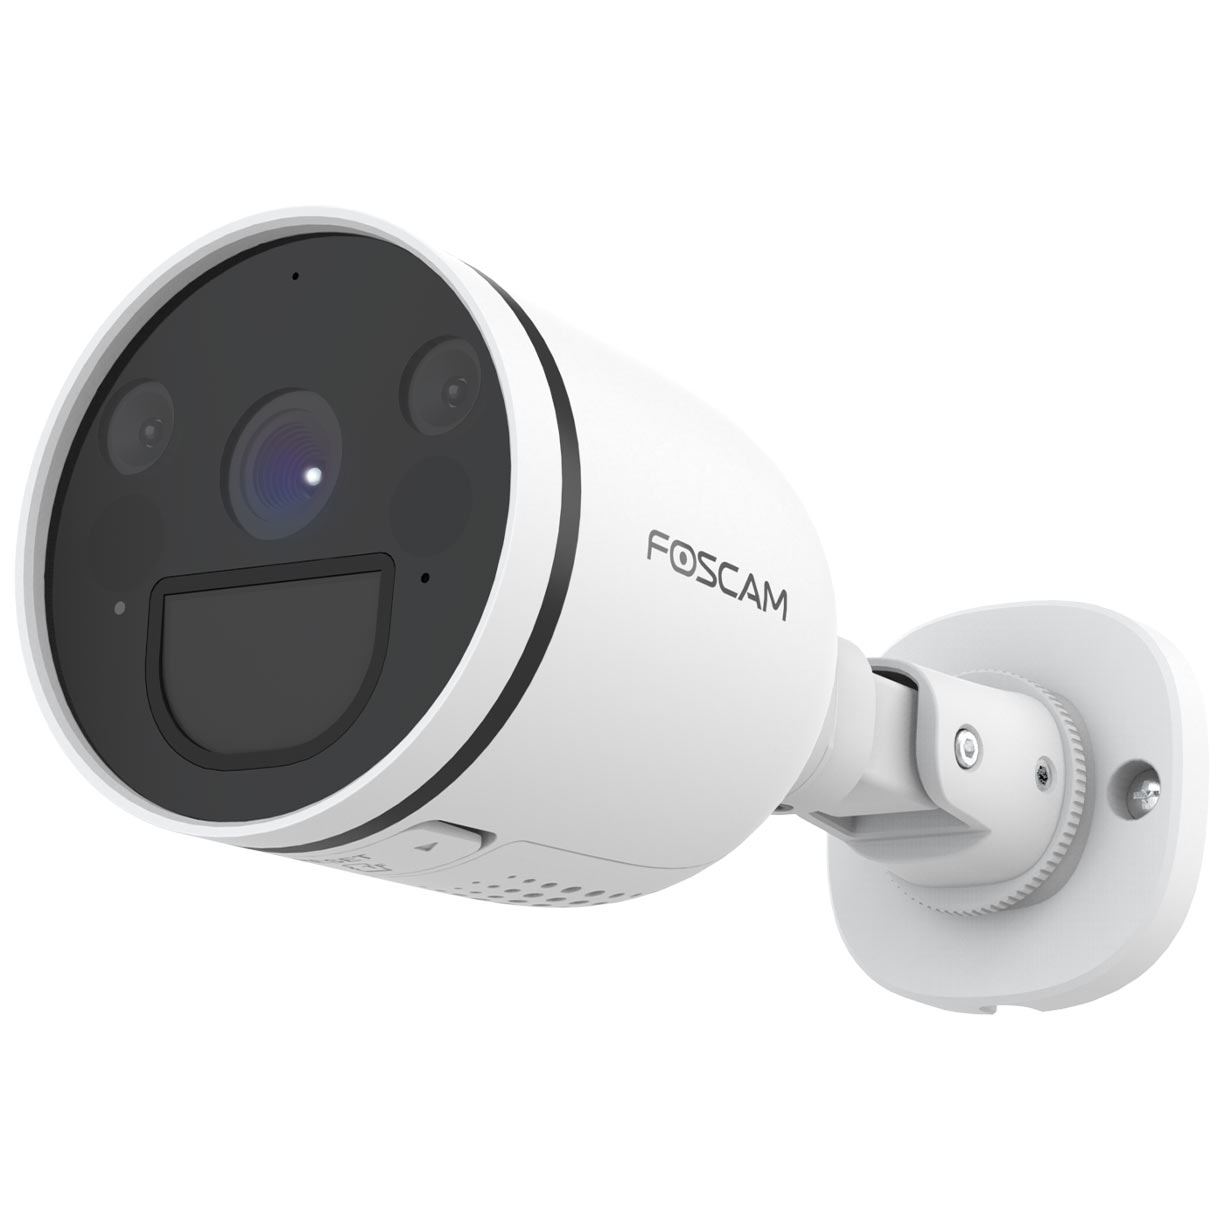 FOSCAM 1440 x Video: S41, pixels Überwachungskamera, Auflösung 2560